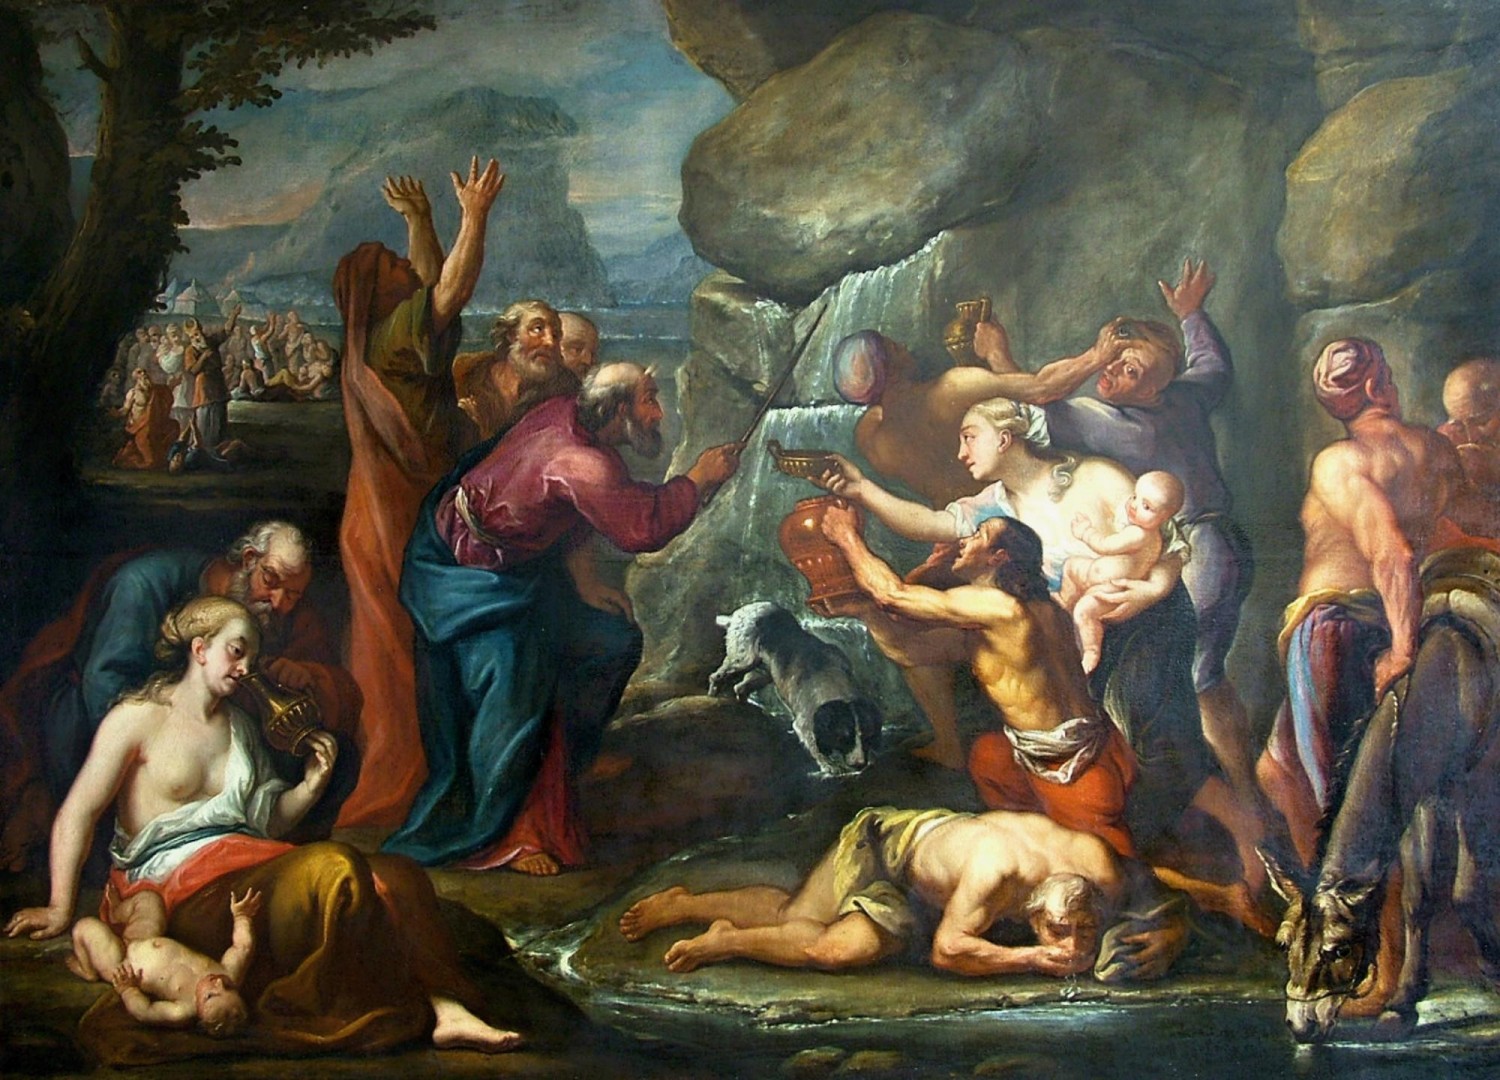 1/ Jacob de Backer (připsáno): Mojžíš vyrážející vodu ze skály, konec 16. století  olej na plátně, 195 x 270 cm dosažená cena: 6 000 000 Kč Galerie Ustar 11. 11. 2017